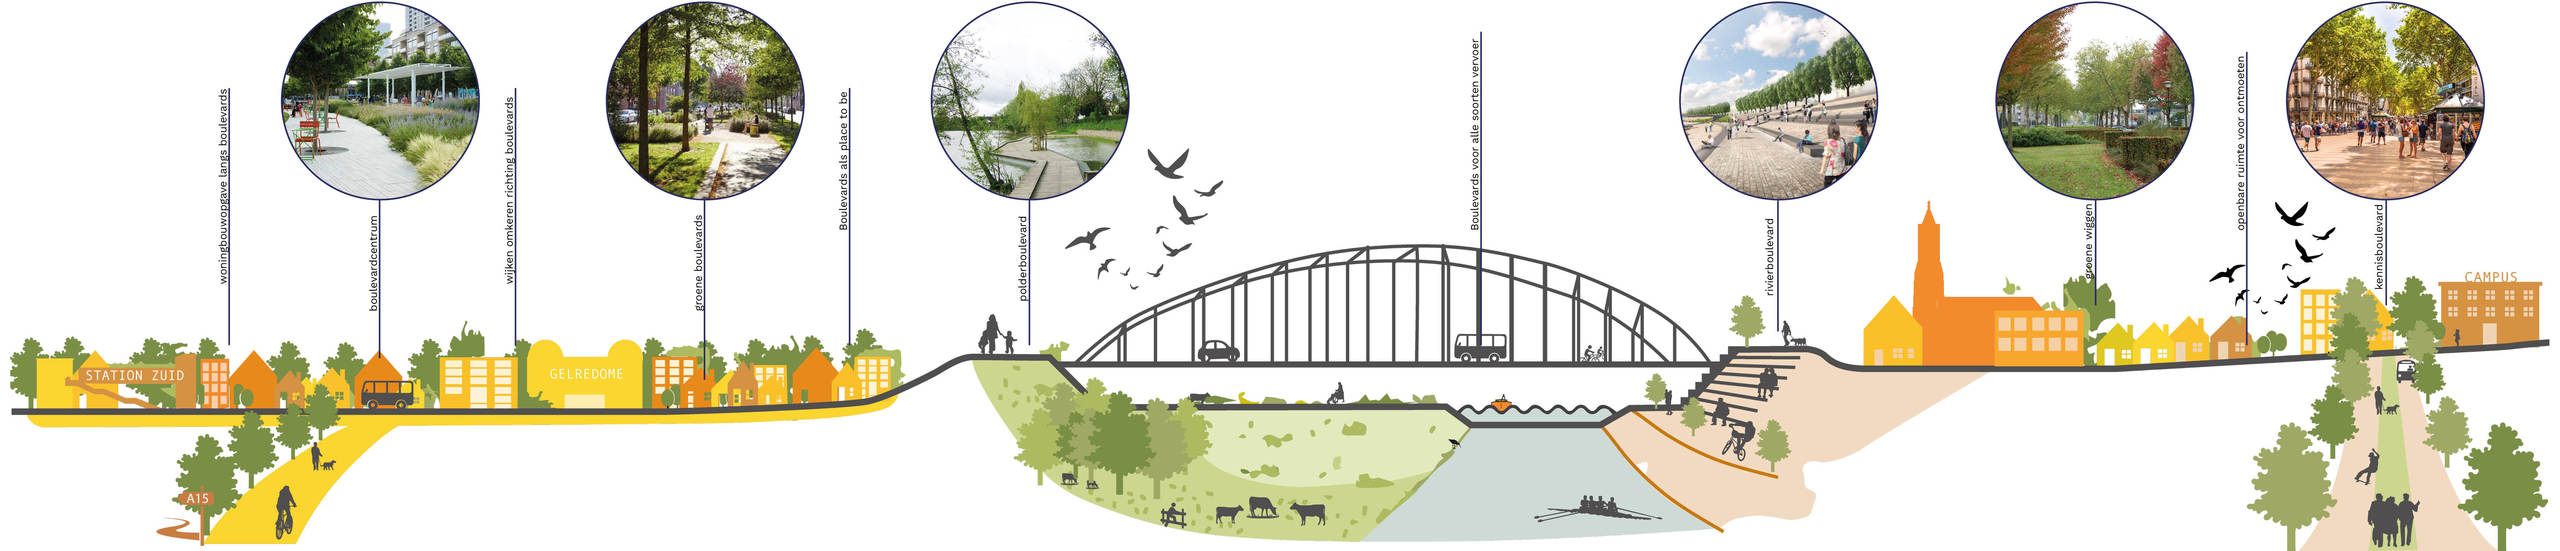 Illustratie van Arnhem in het scenario 'stad van de Boulevards'. Er zijn 'artist impressions' te zien van een boulevardcentrum, groene boulevards, een polderboulevard en een rivierboulevard 